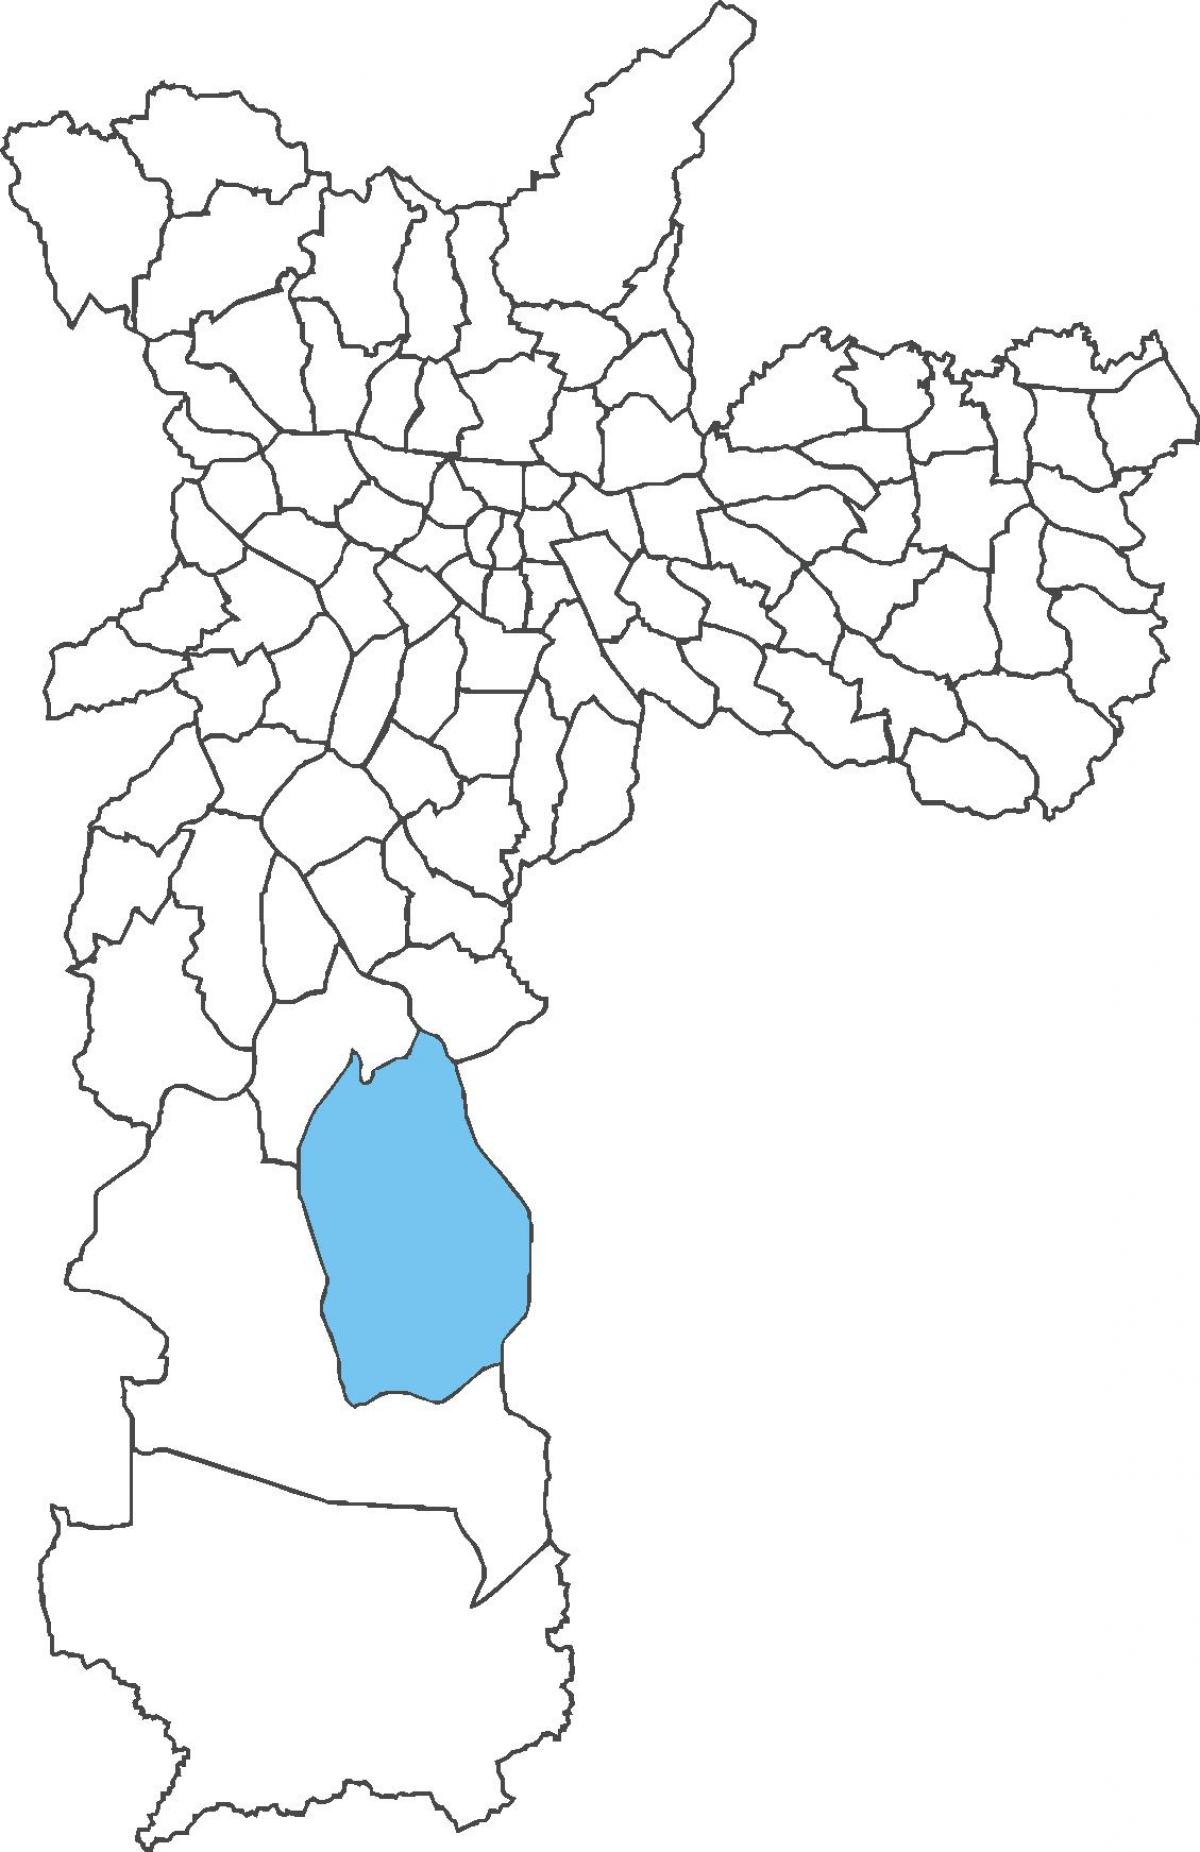 Քարտեզ շրջան Grajaú